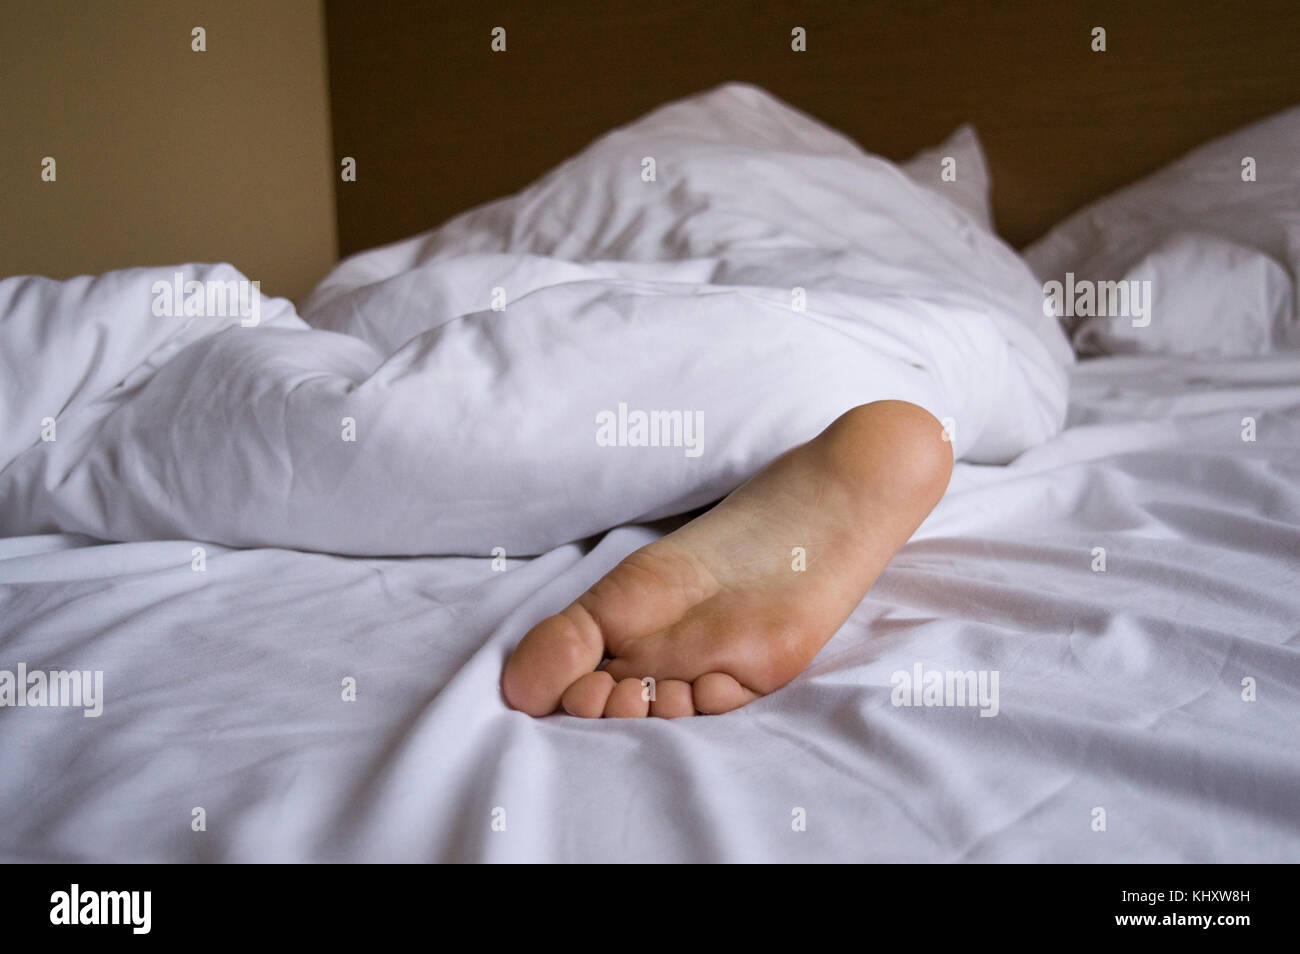 Ein Fuß einer schlafenden Person Frau oder Mann unter einer weißen Decke  auf dem Bett stecken Stockfotografie - Alamy